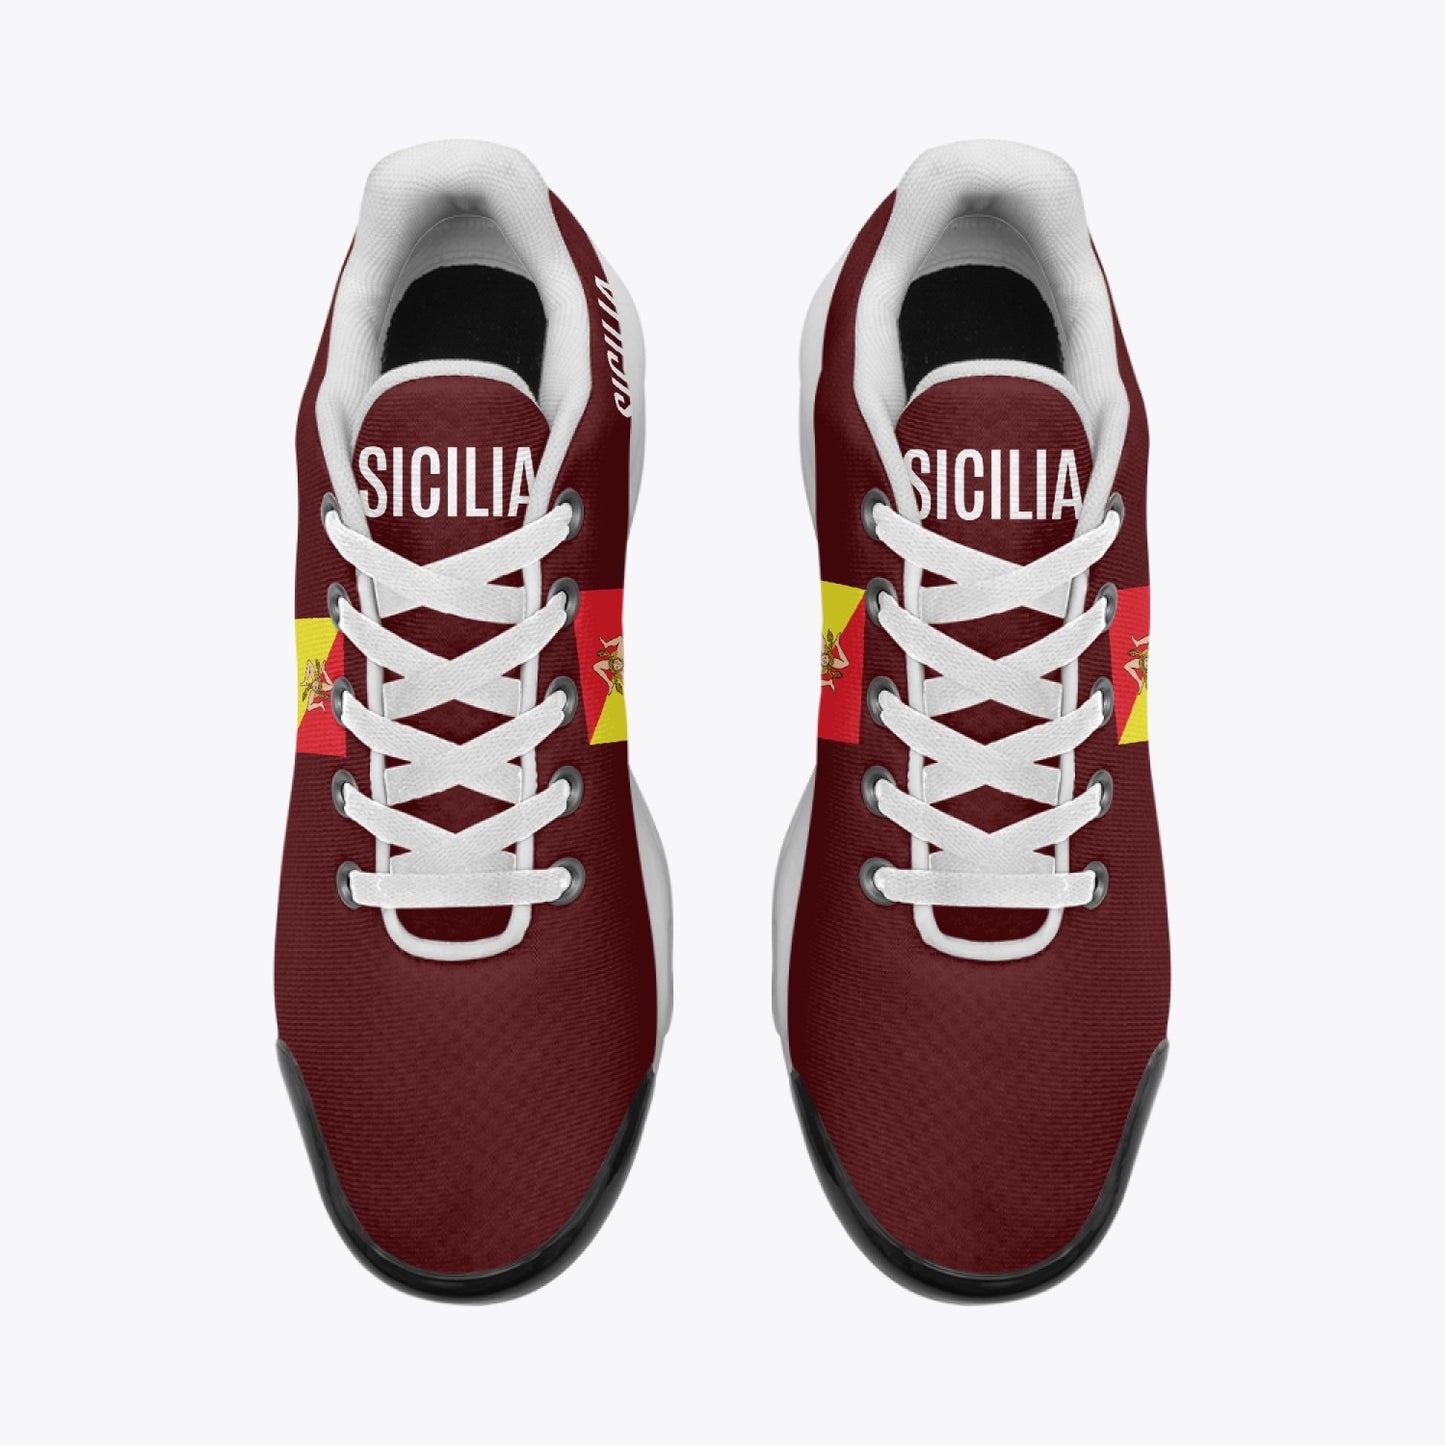 Sicilia Bounce Sneakers